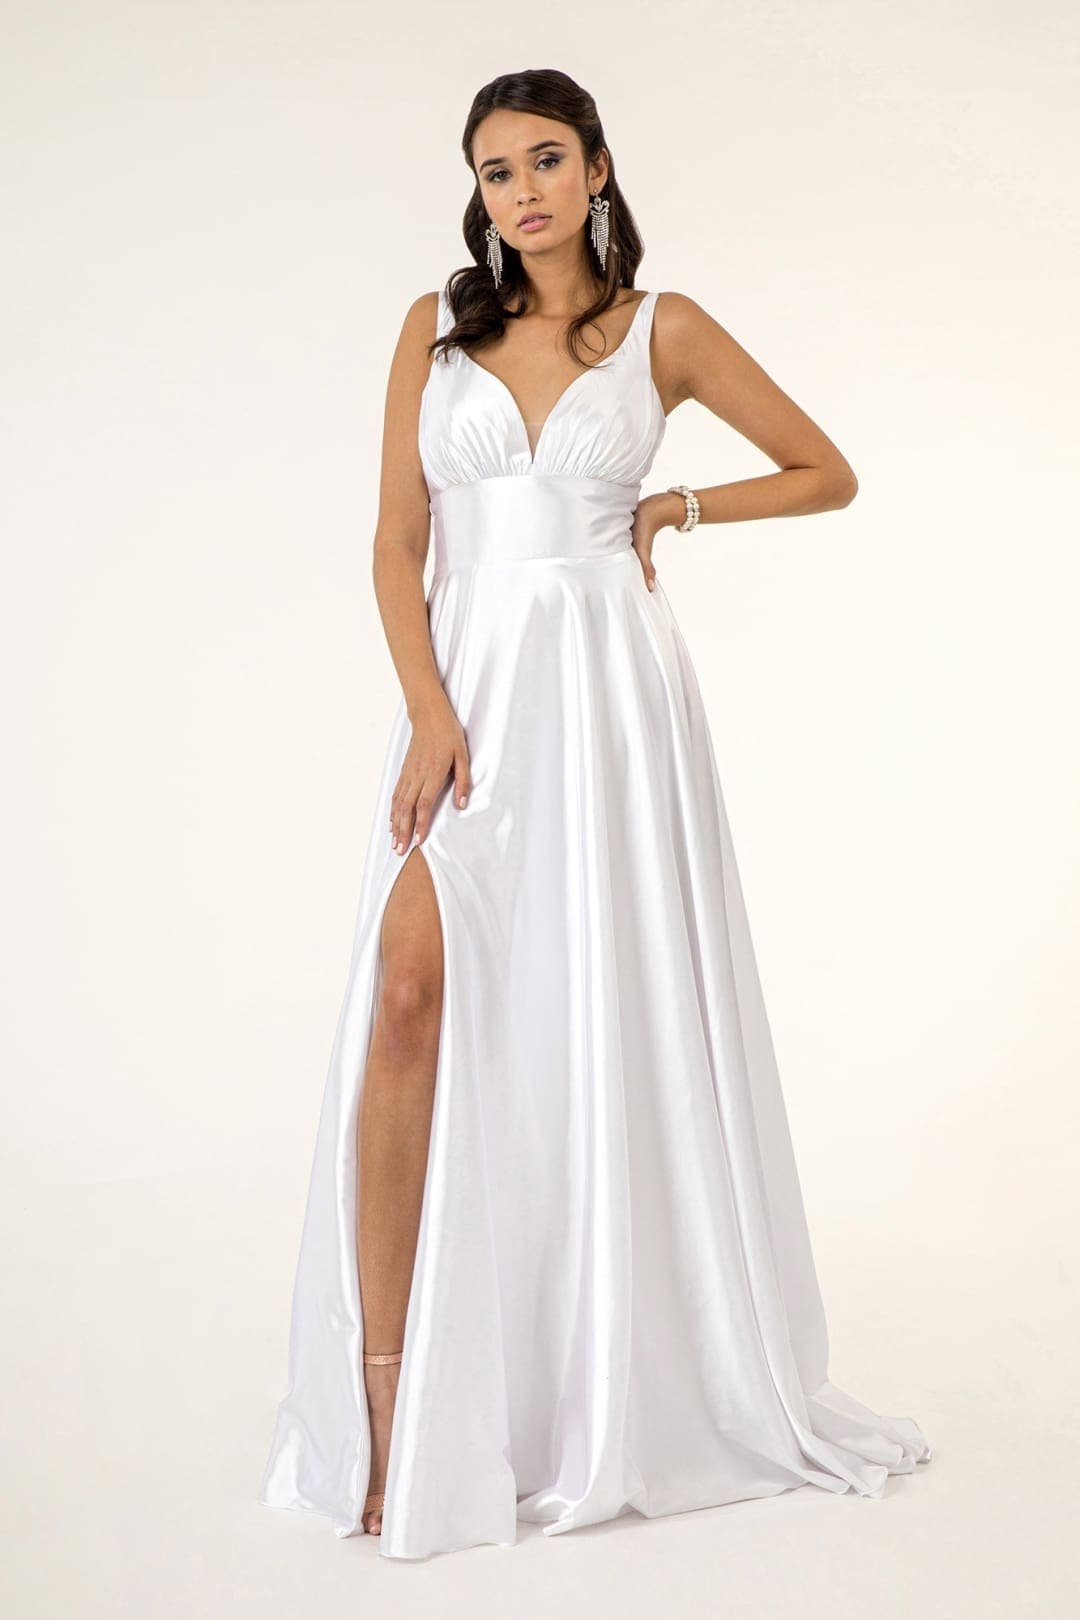 Satin White Wedding Dress - WHITE / XS